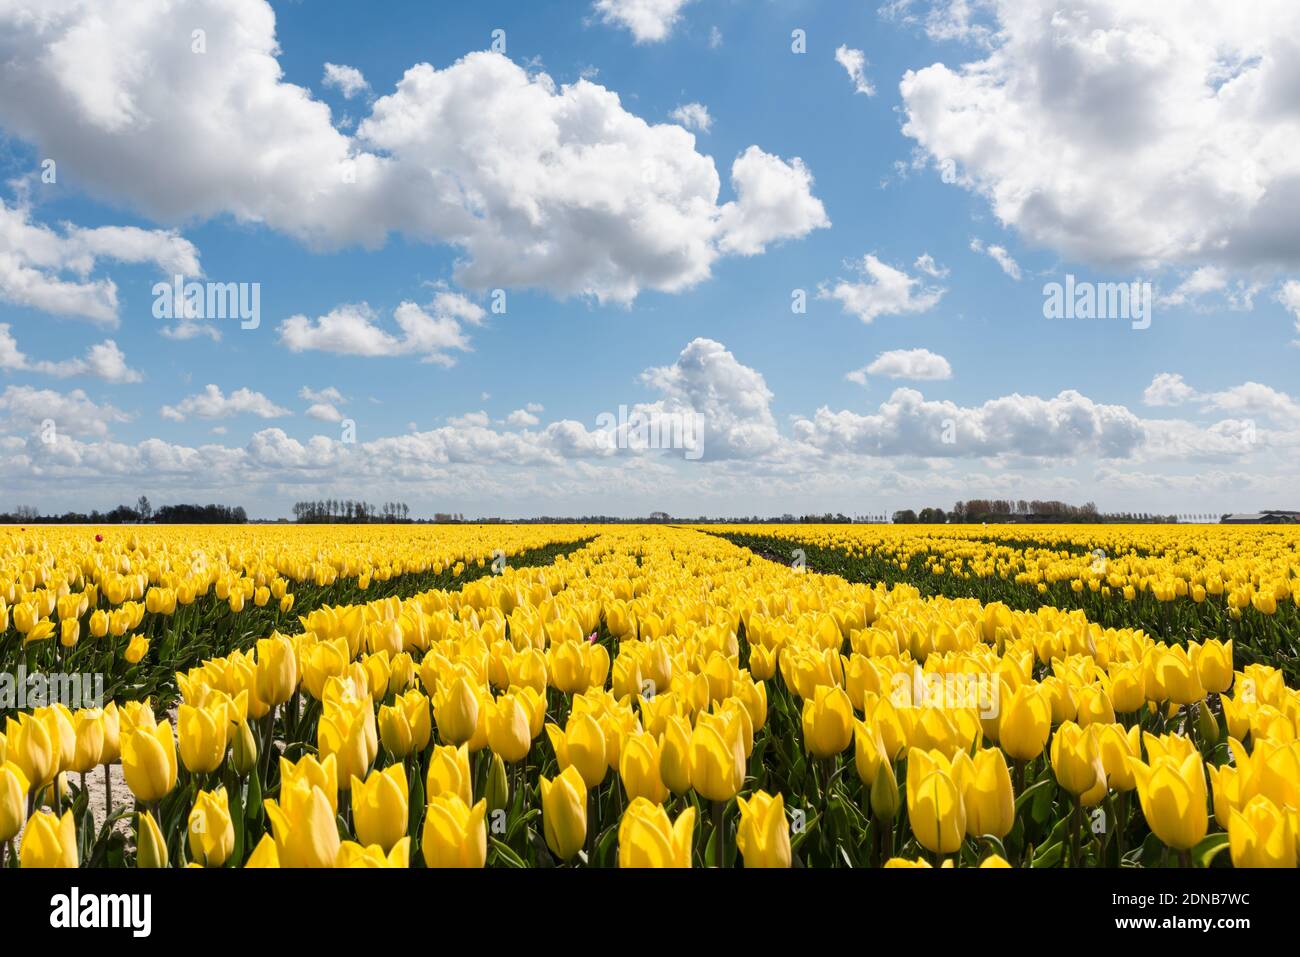 Een weids polderlandschap met gele tulpenvelden die volop in bloei staan op Goeree-Overflakkee. Het is een zonnige dag met een blauwe lucht en mooie witte wolken. Stock Photo